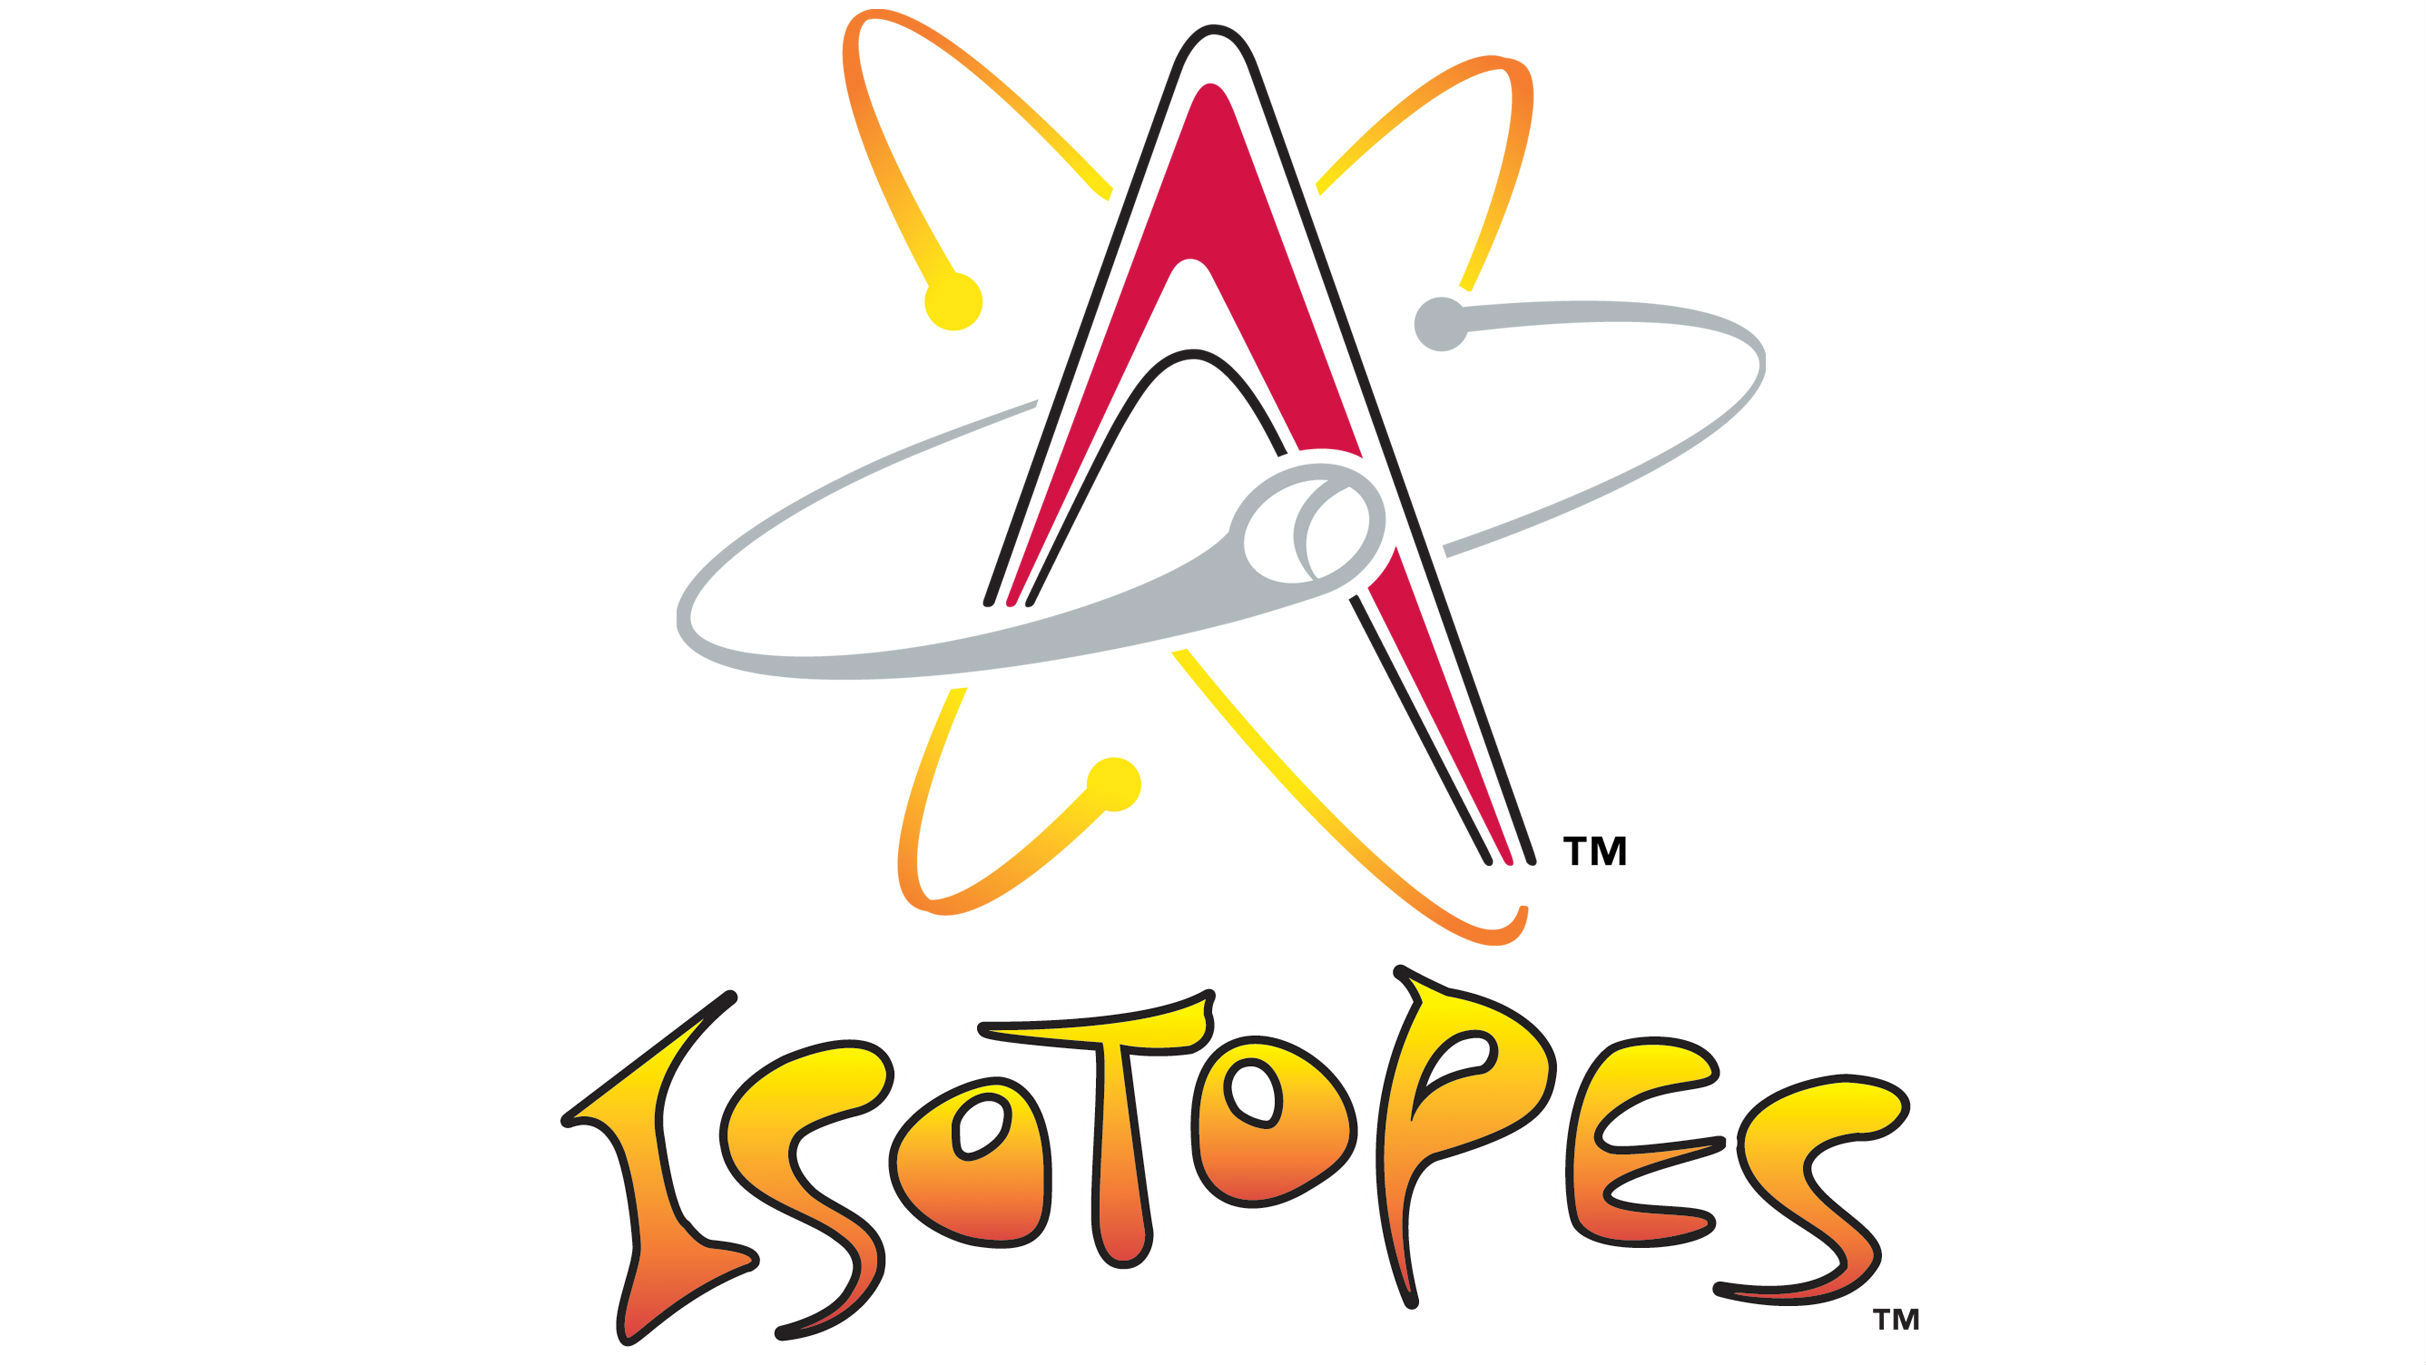 Albuquerque Isotopes vs. Las Vegas Aviators